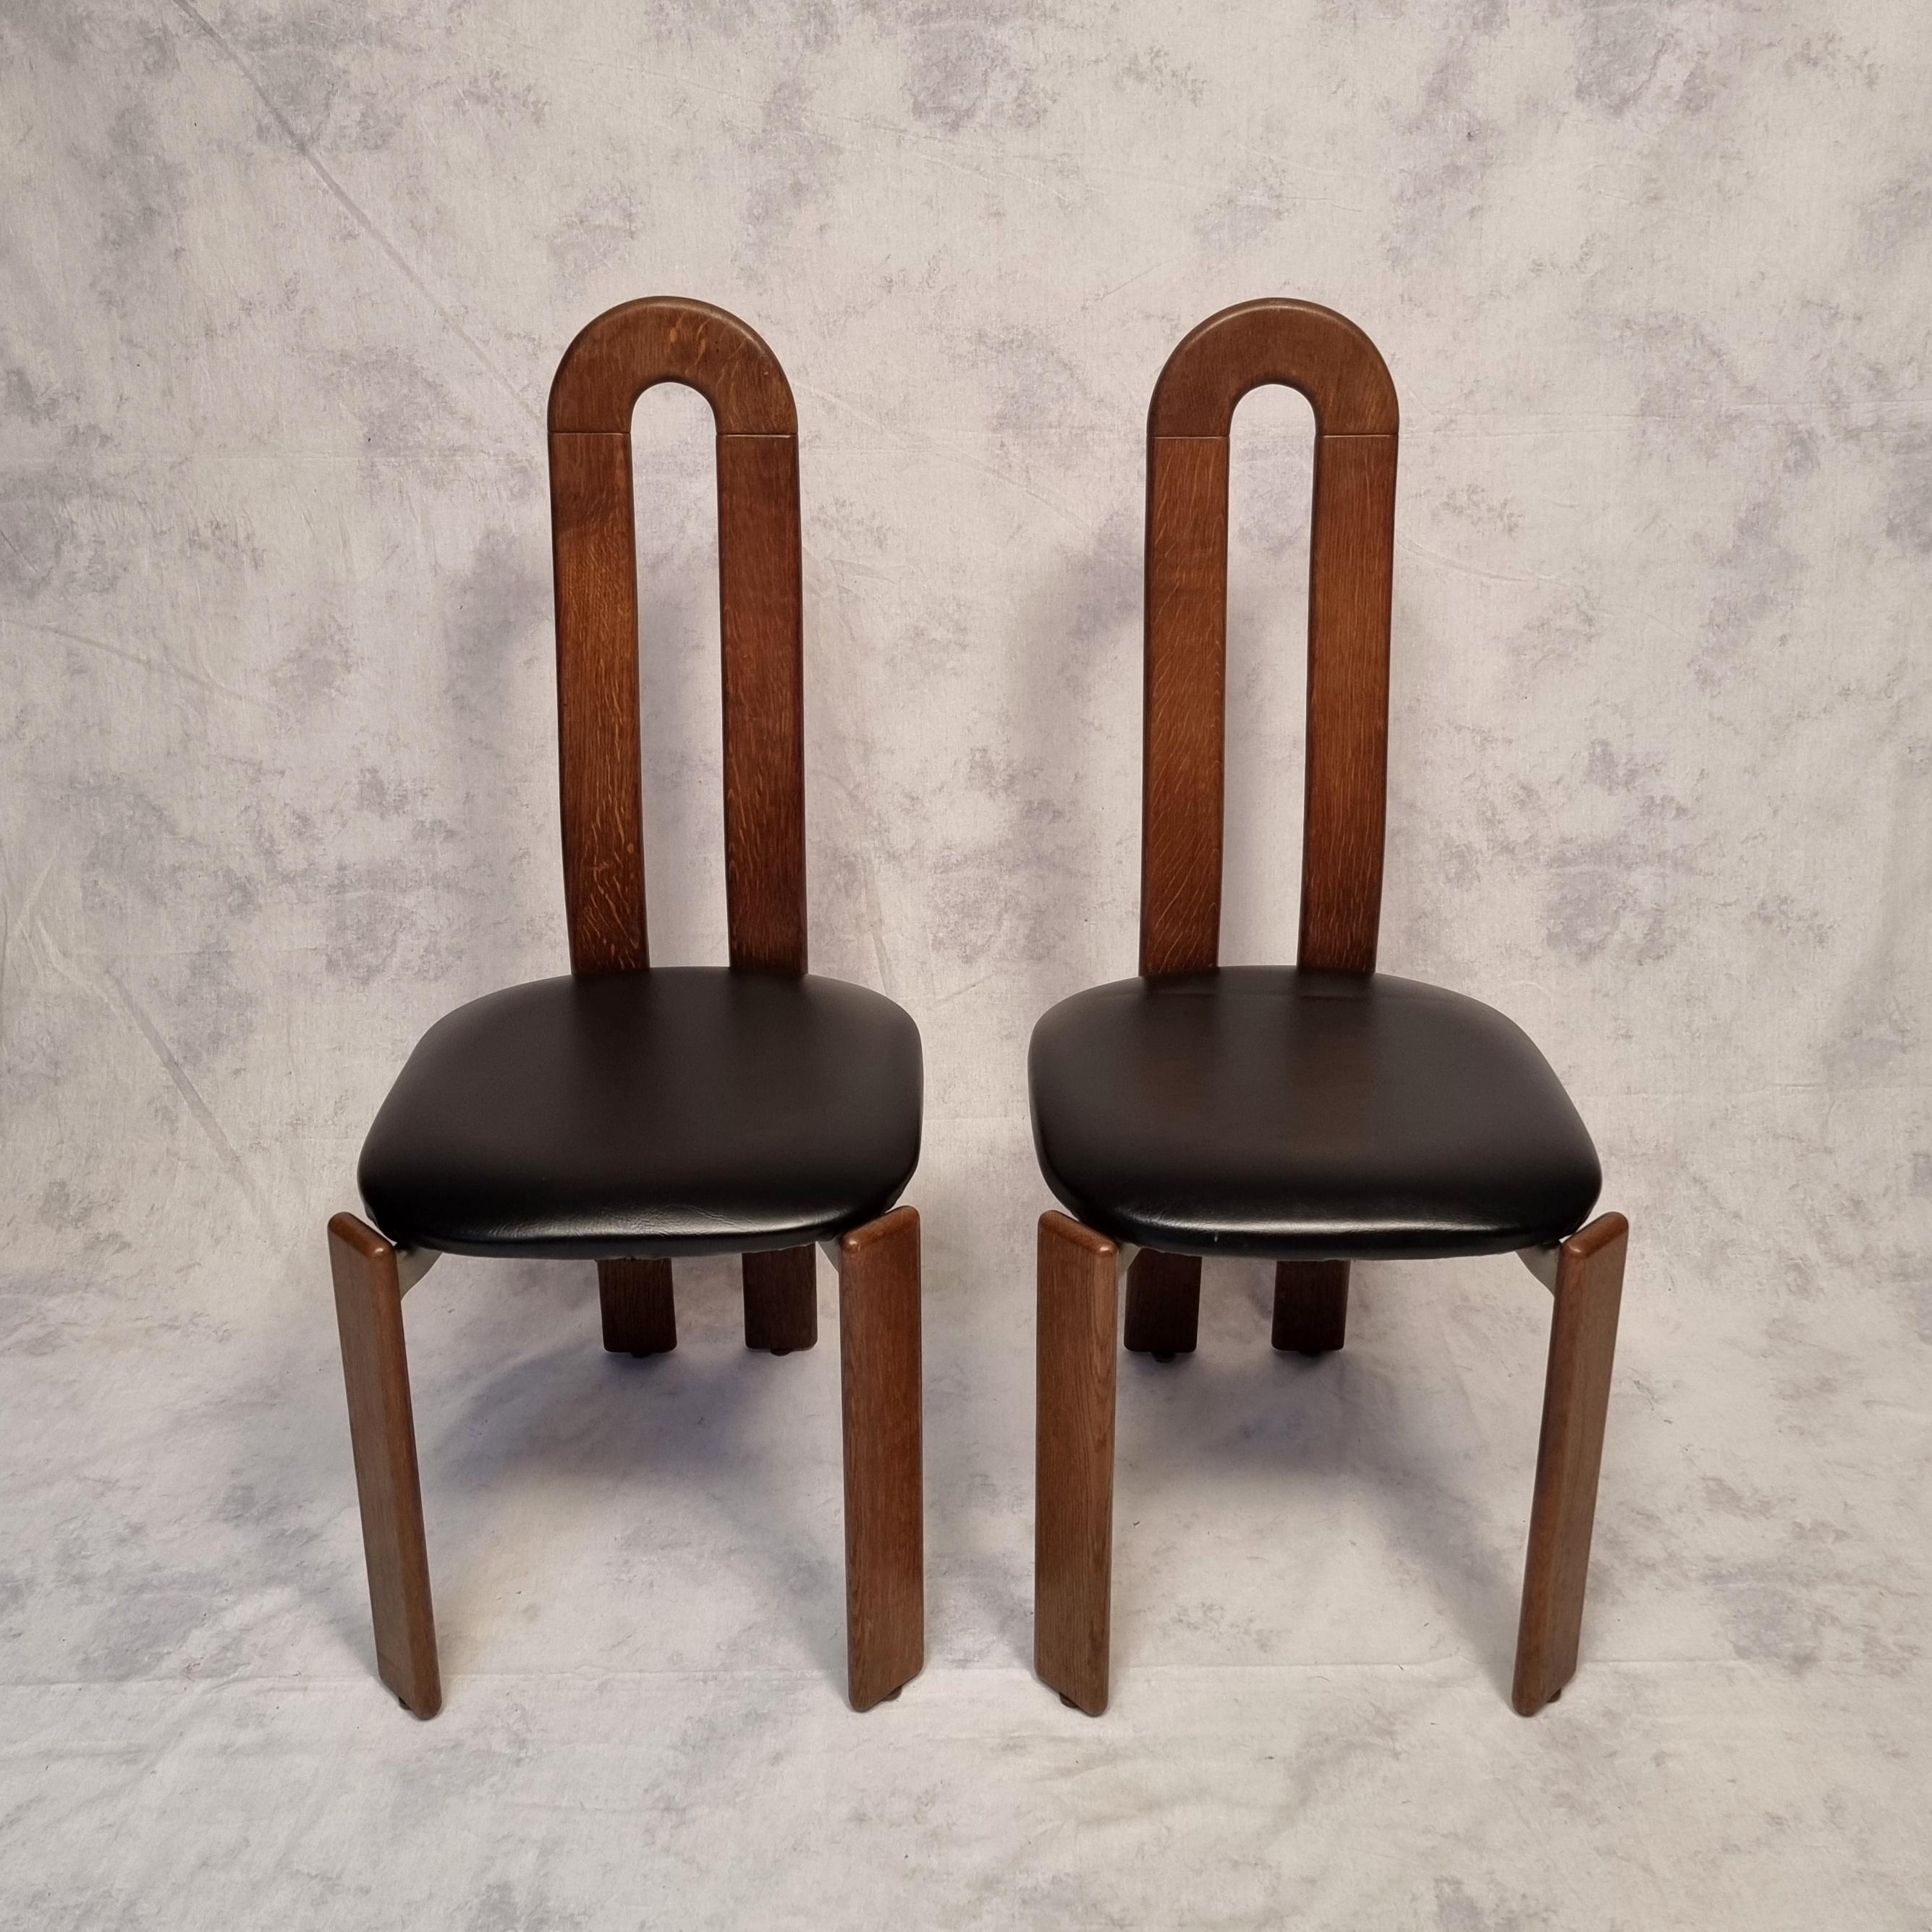 Late 20th Century Bruno Rey Chairs for Dietiker by Atelier Stuhl Aus Stein Am Rhein, Oak, Ca 197 For Sale